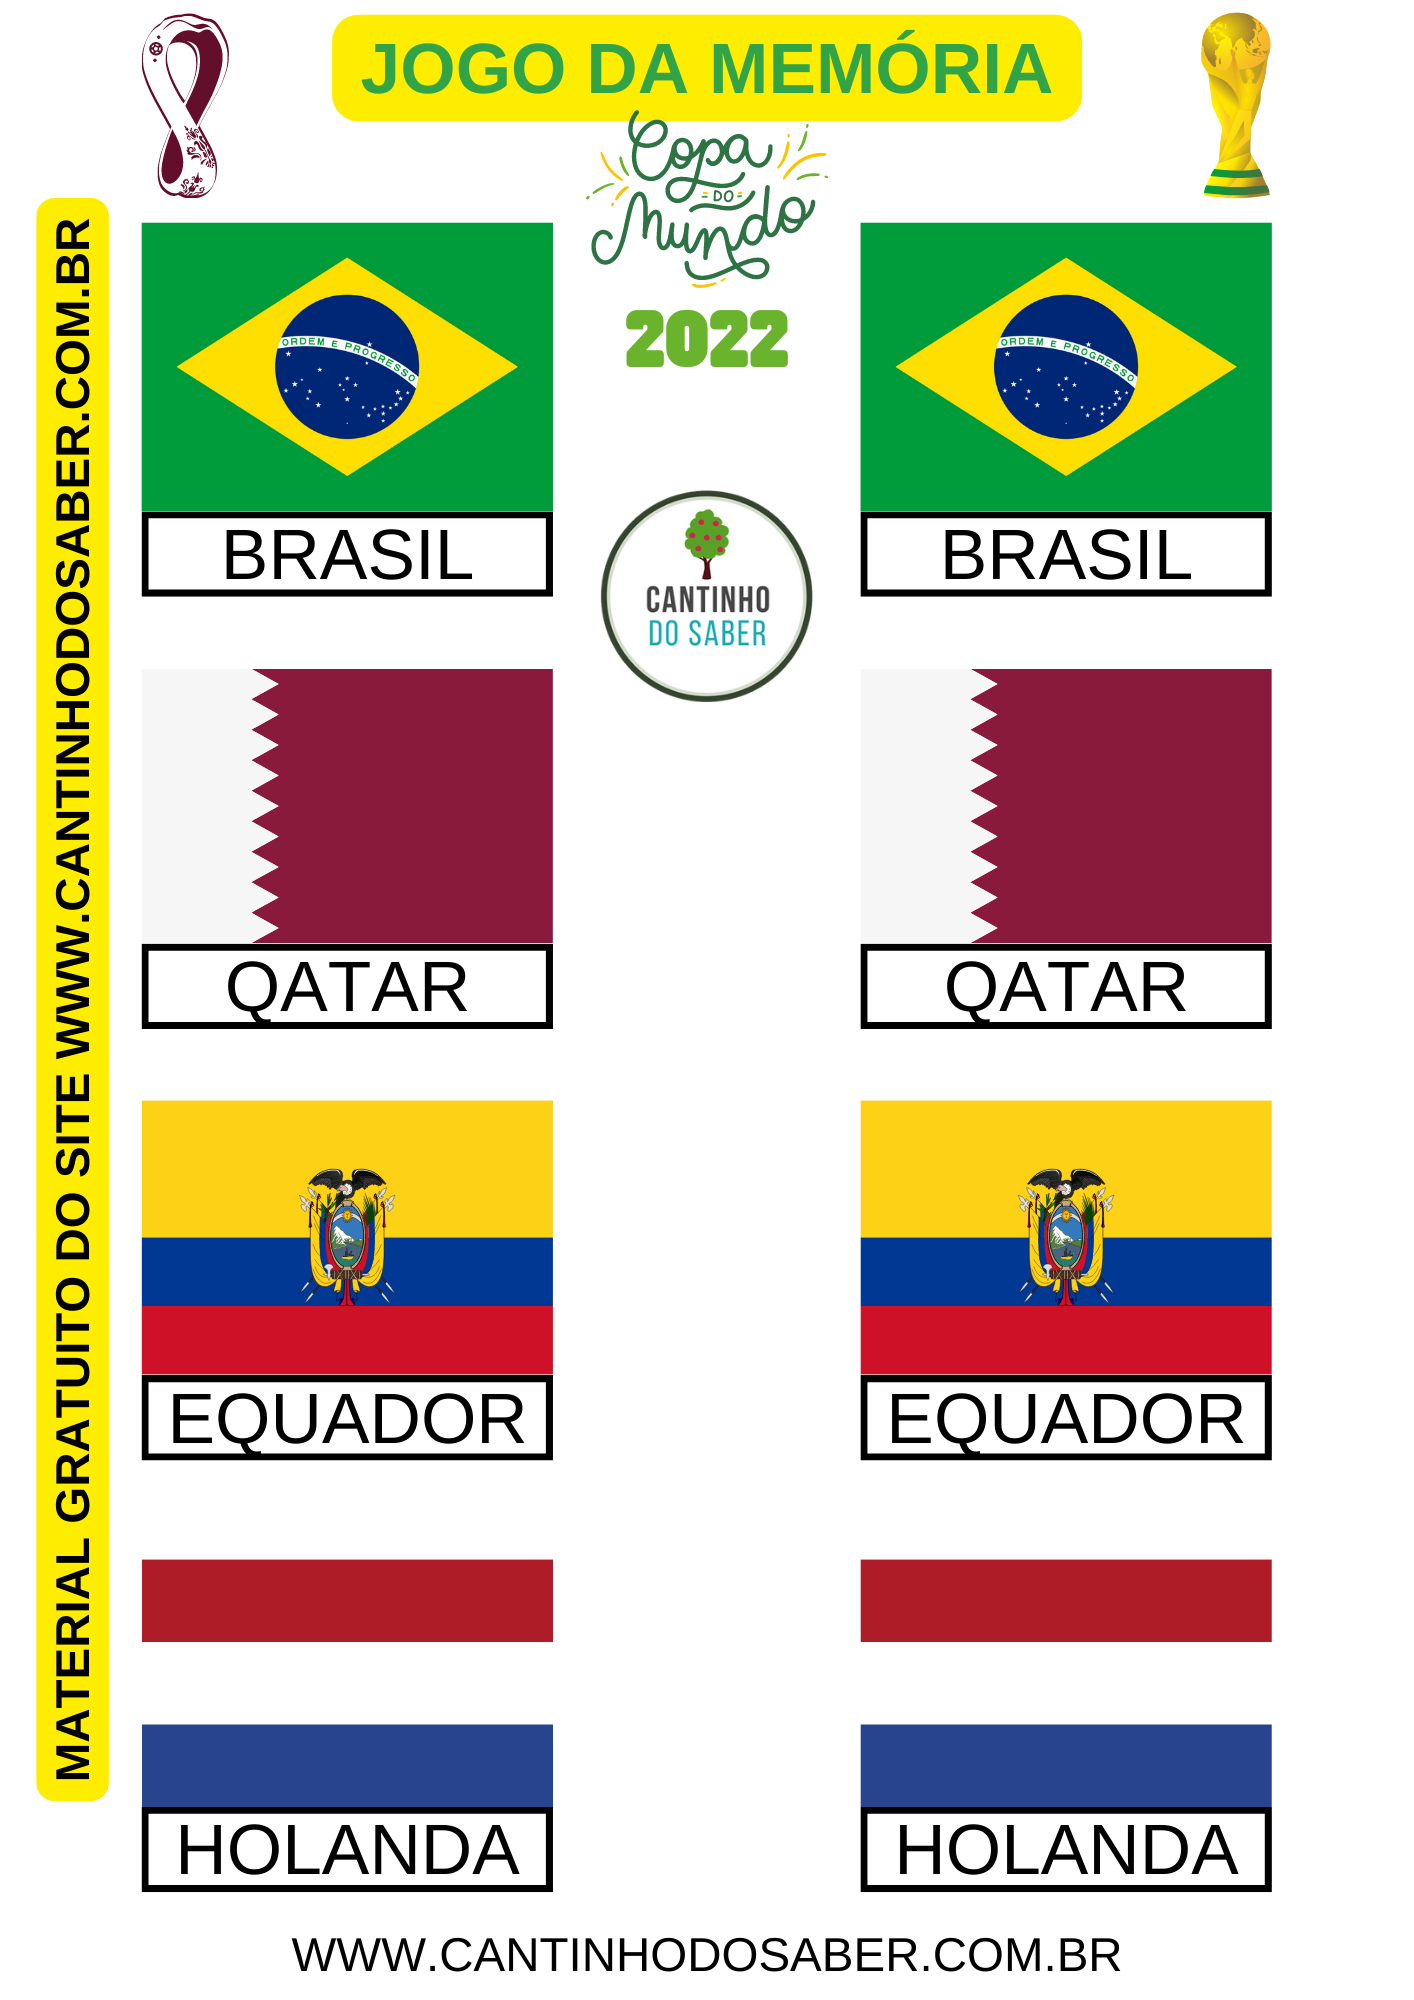 Jogo da Memória: Copa do Mundo — SÓ ESCOLA em 2023